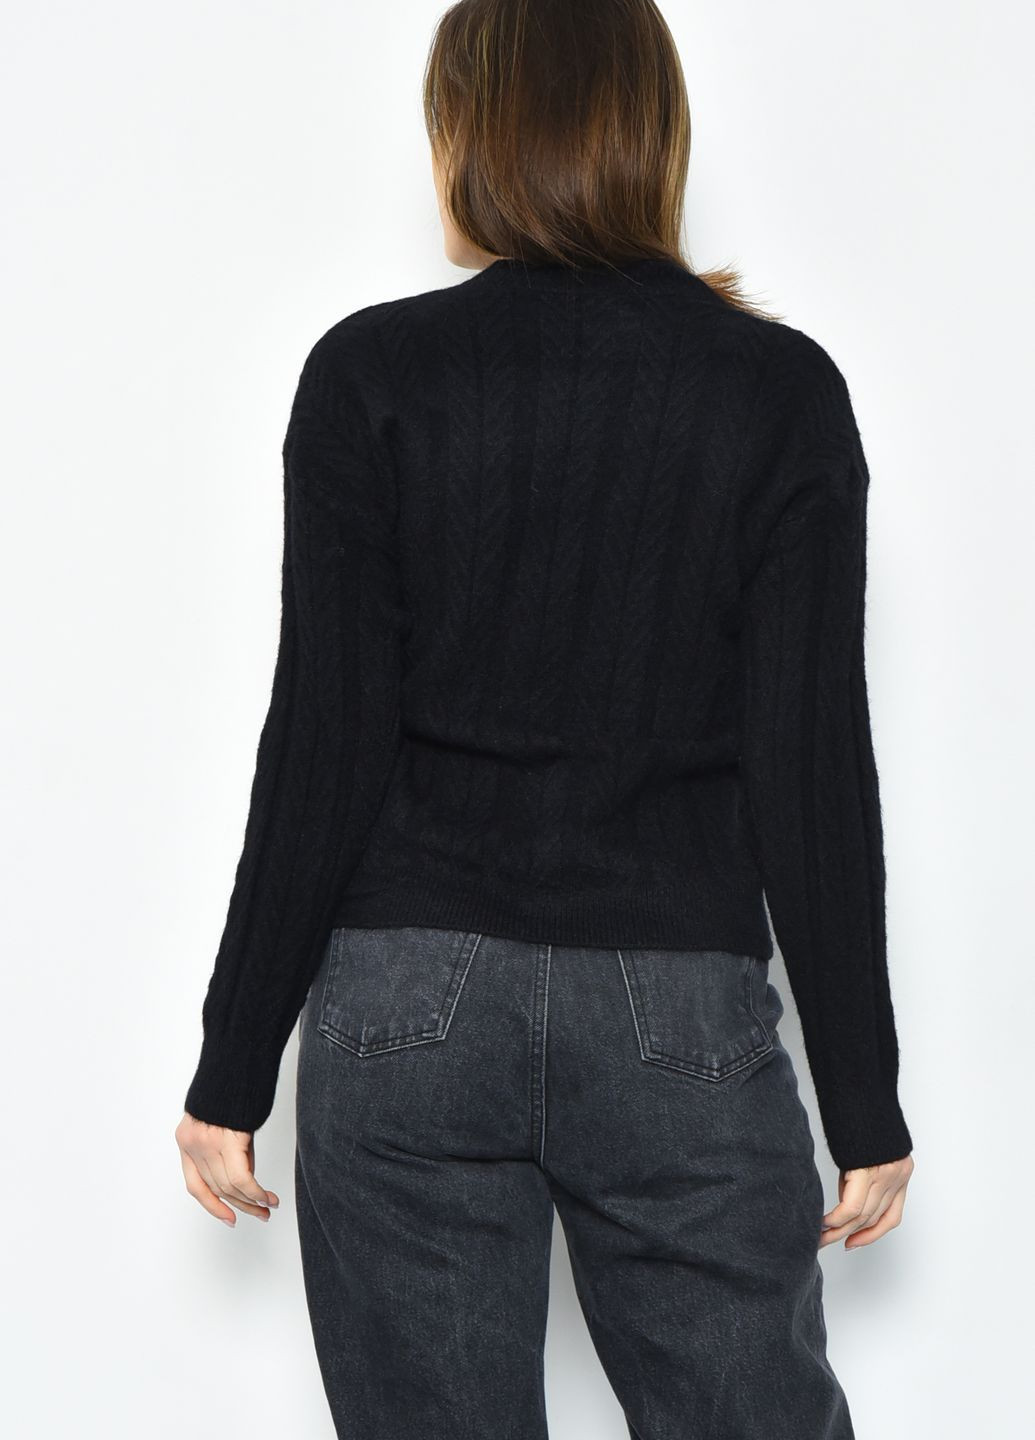 Чорний зимовий светр жіночий ангора чорного кольору пуловер Let's Shop